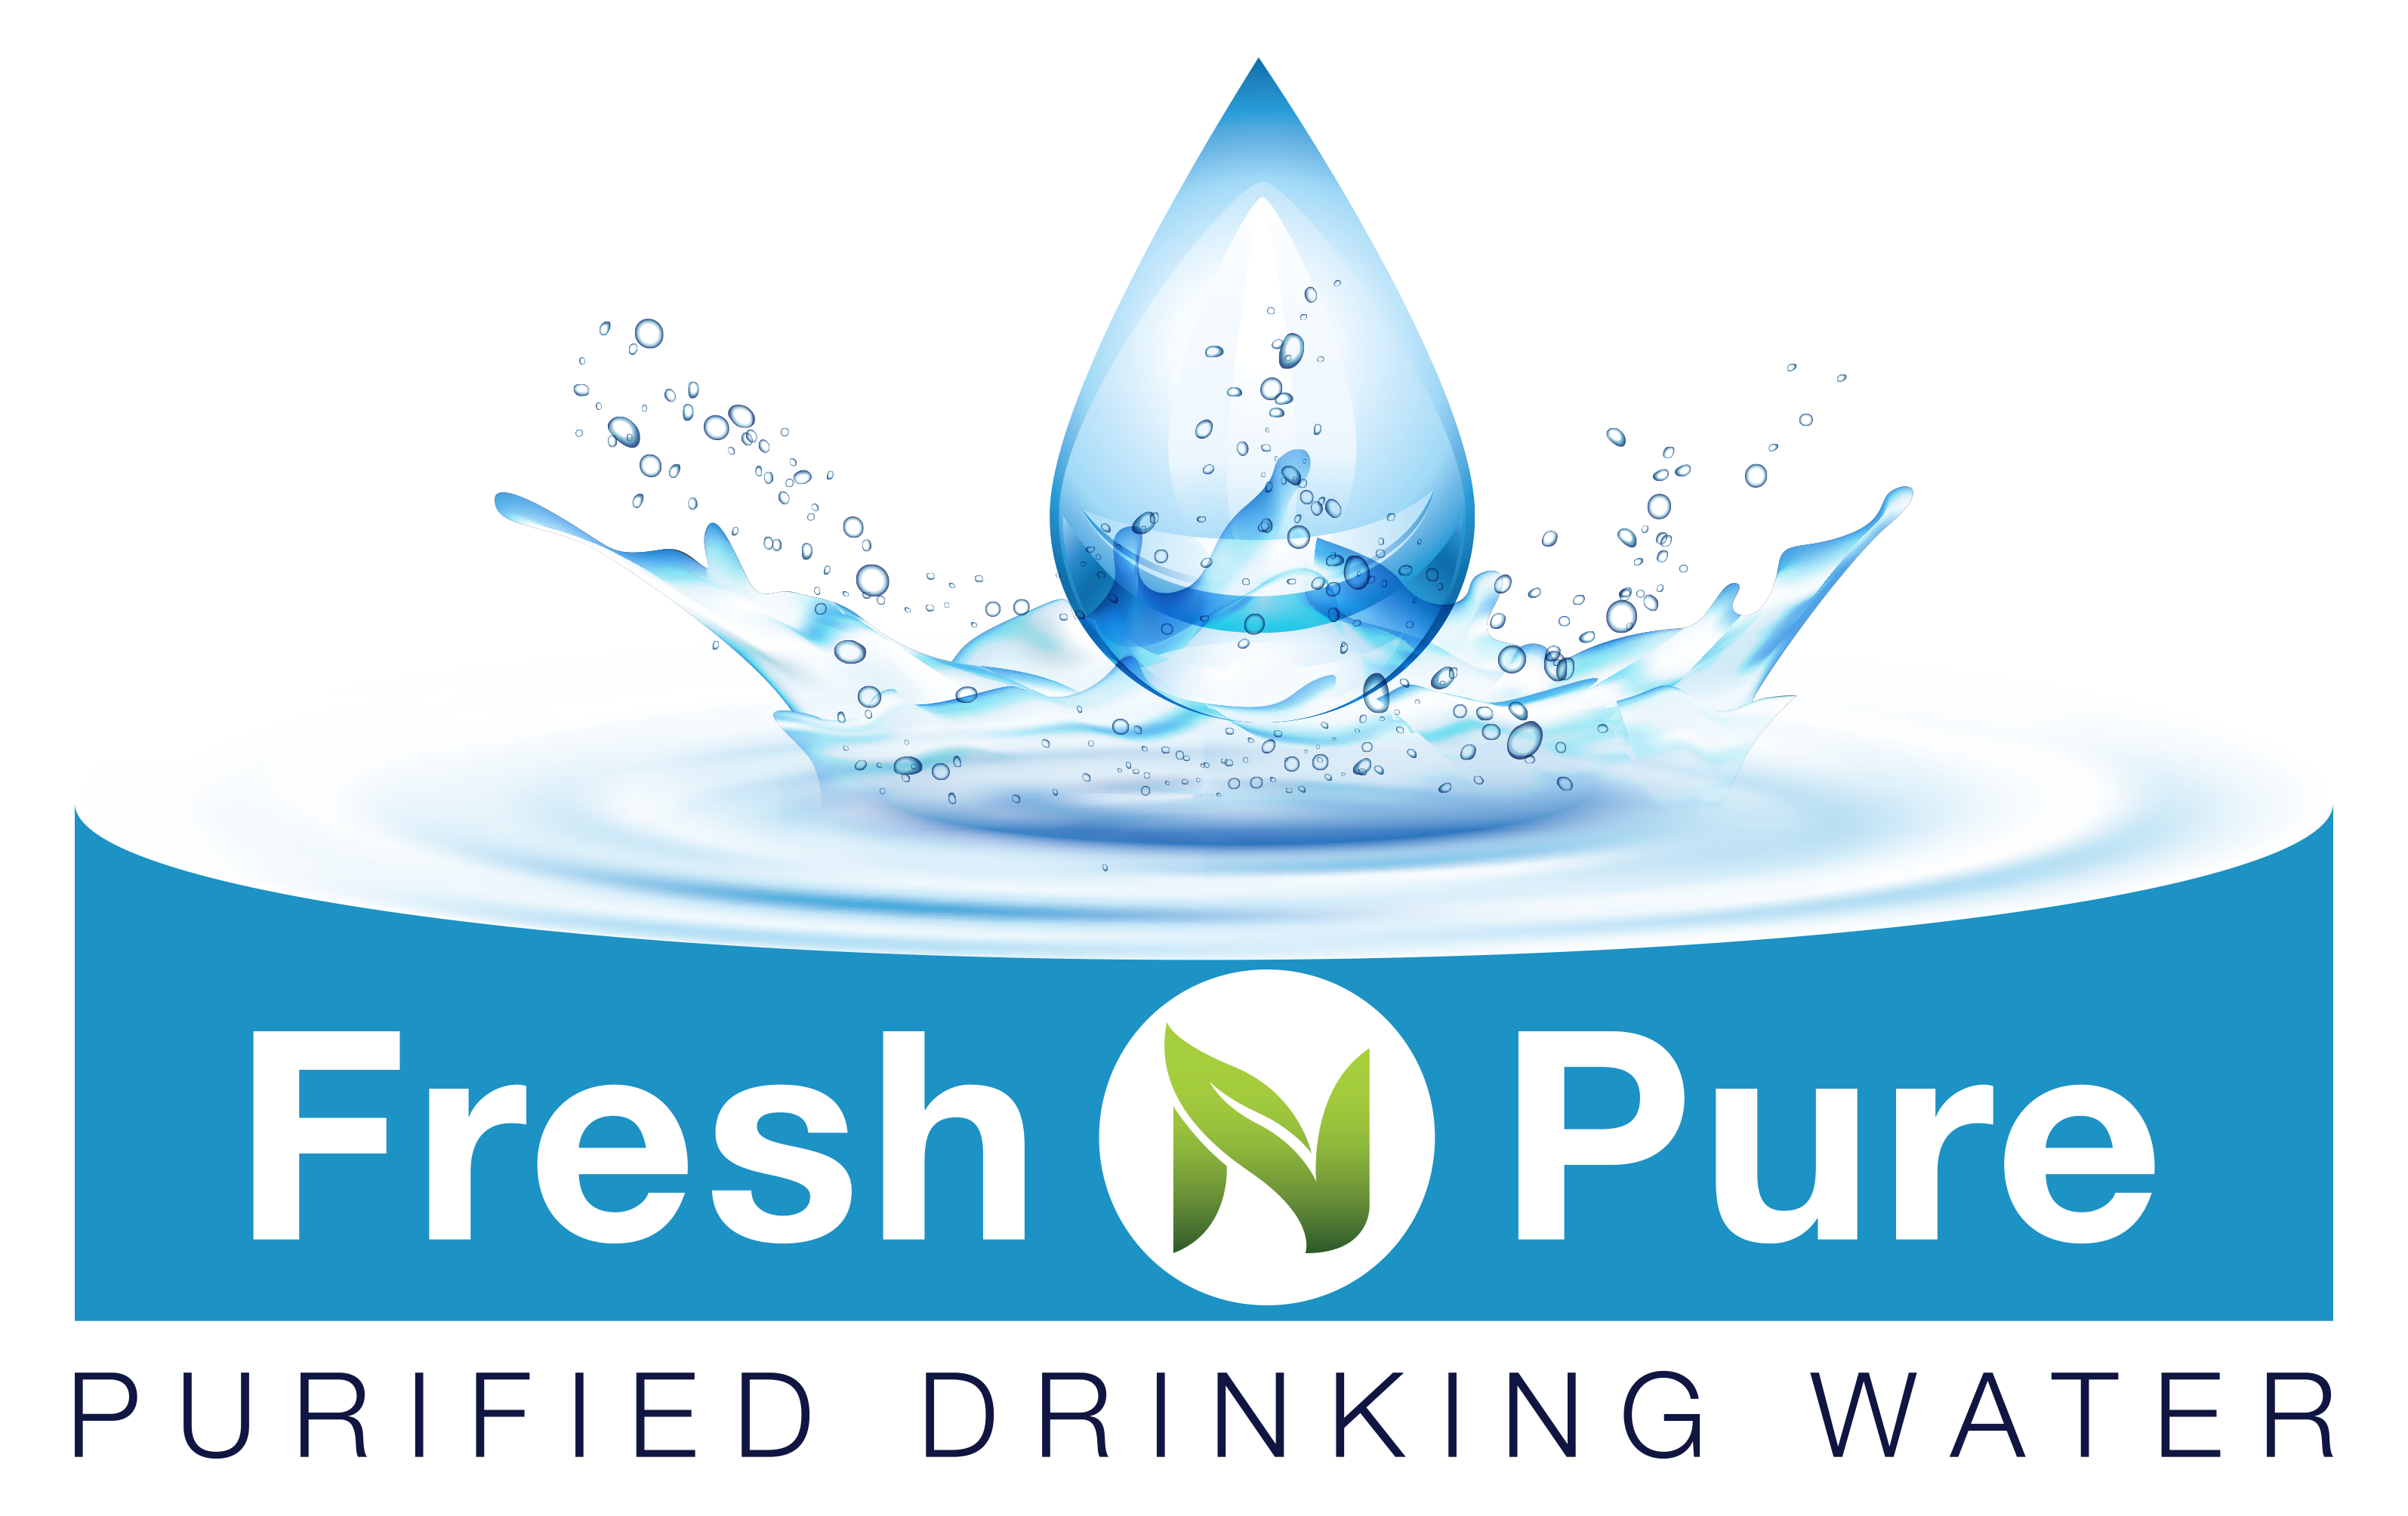 Fresh n pure water UK